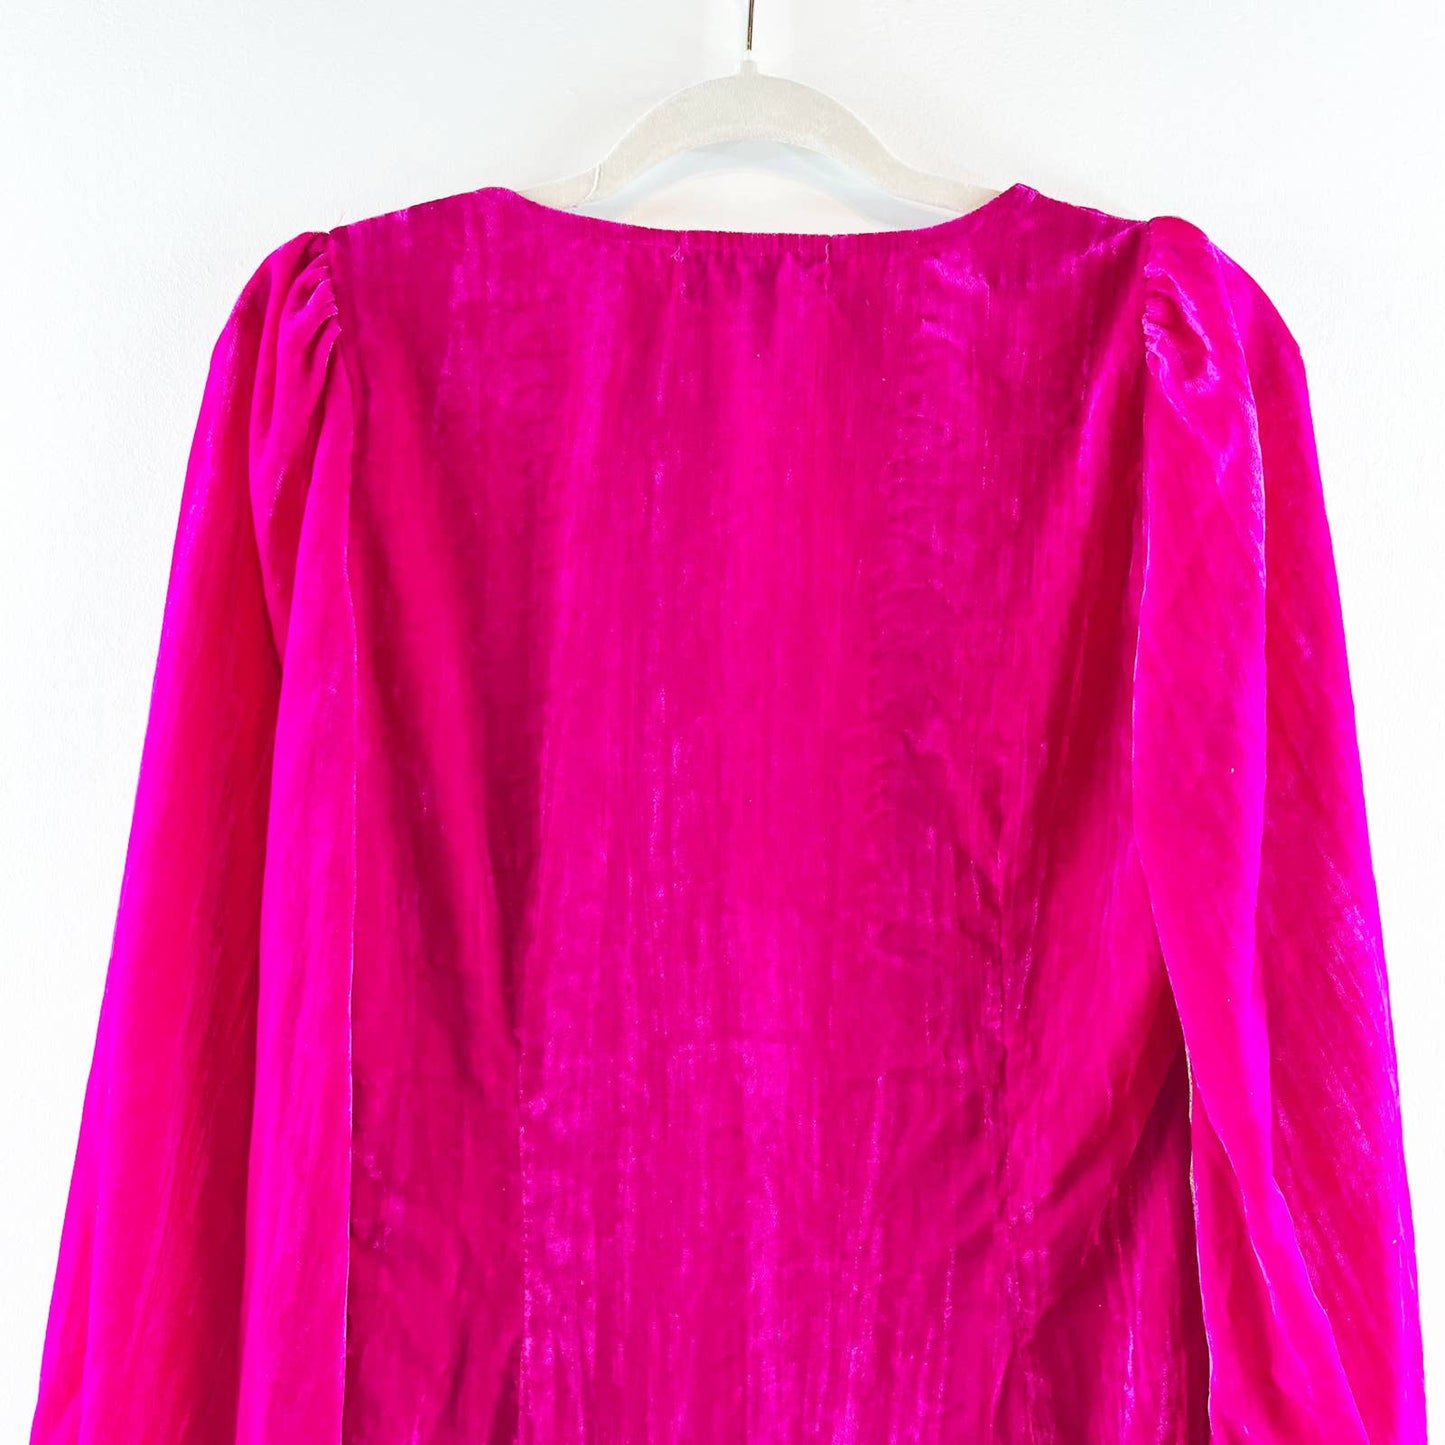 Cider Velvet Solid Long Bishop Sleeve Deep V Neck Mini Dress Hot Pink Medium NWT